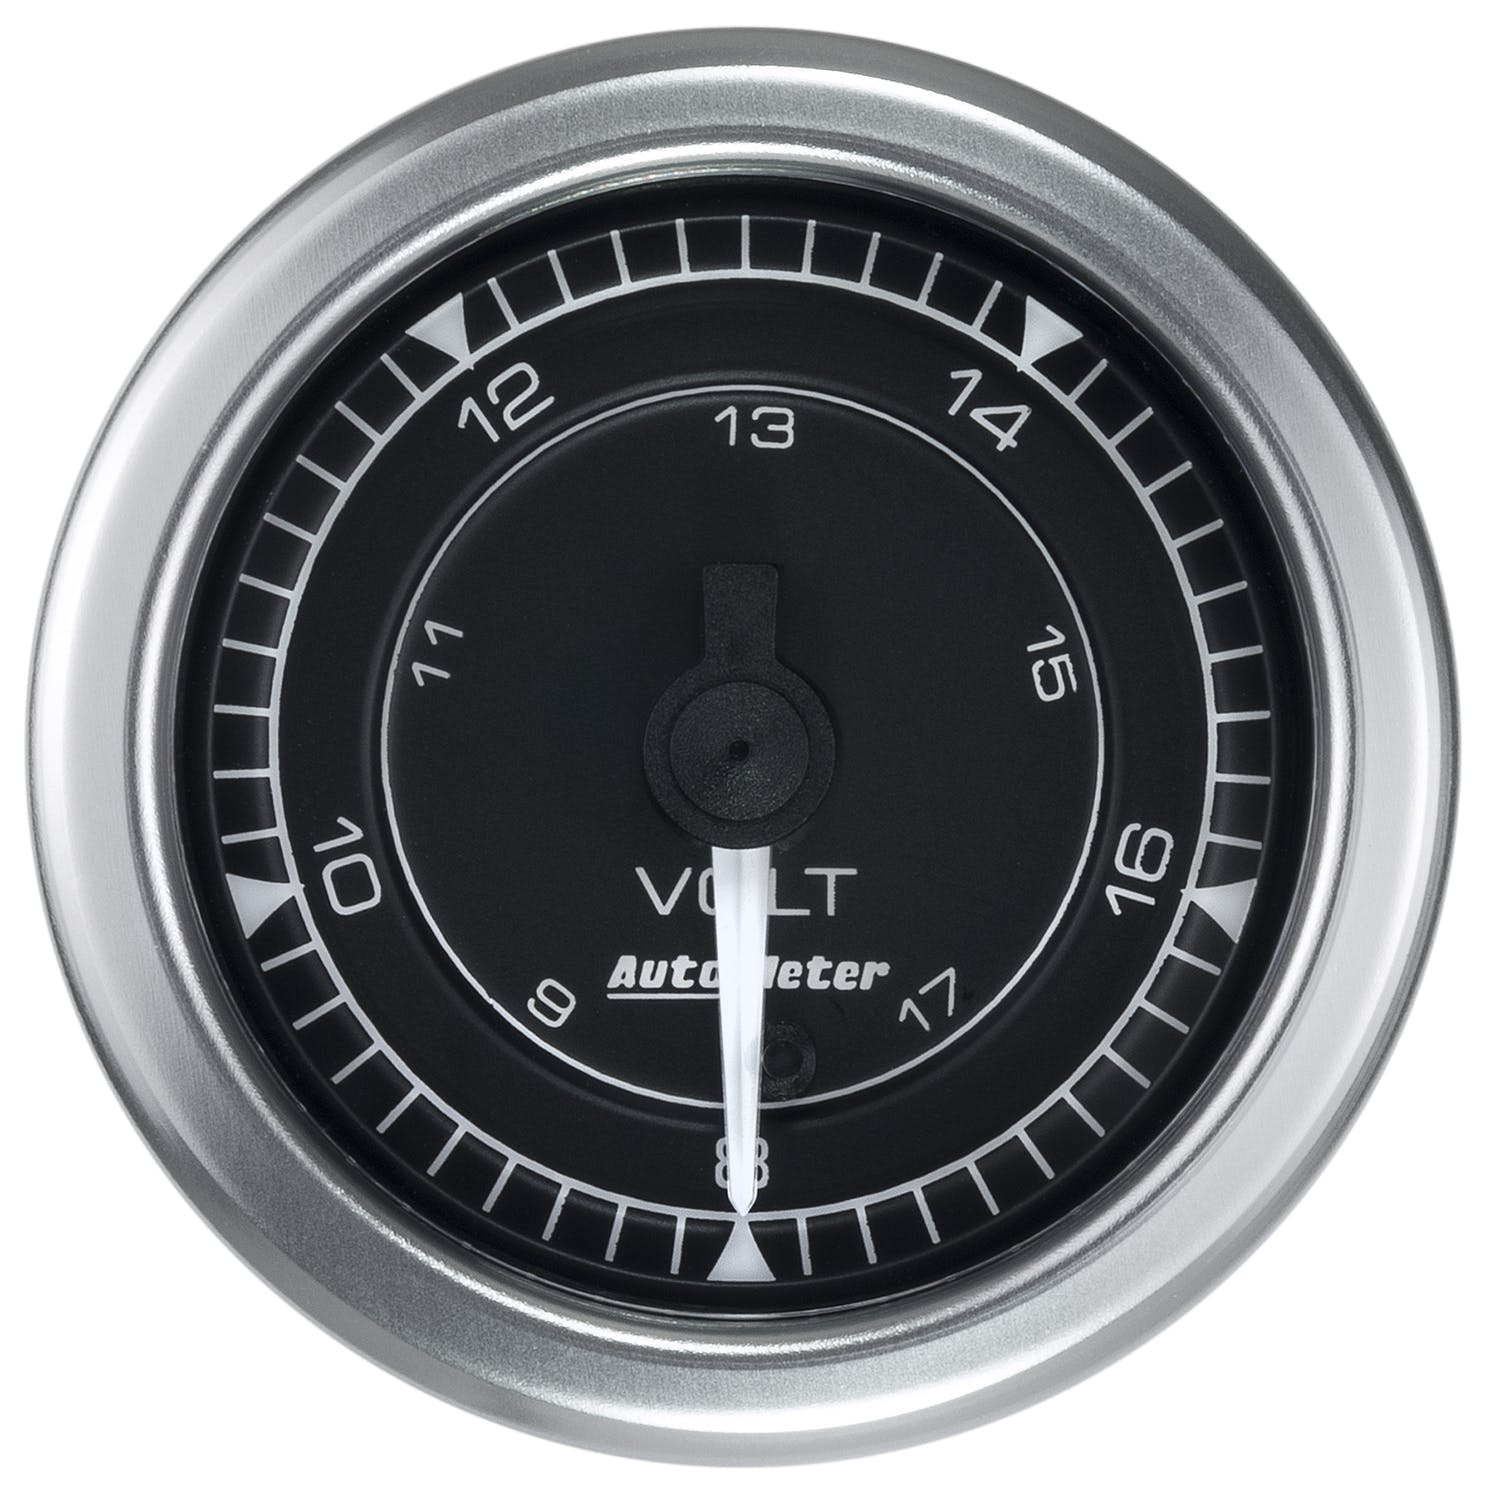 AutoMeter Products 8191 Chrono Gauge, Voltmeter, 18v, Digital Stepper Motor